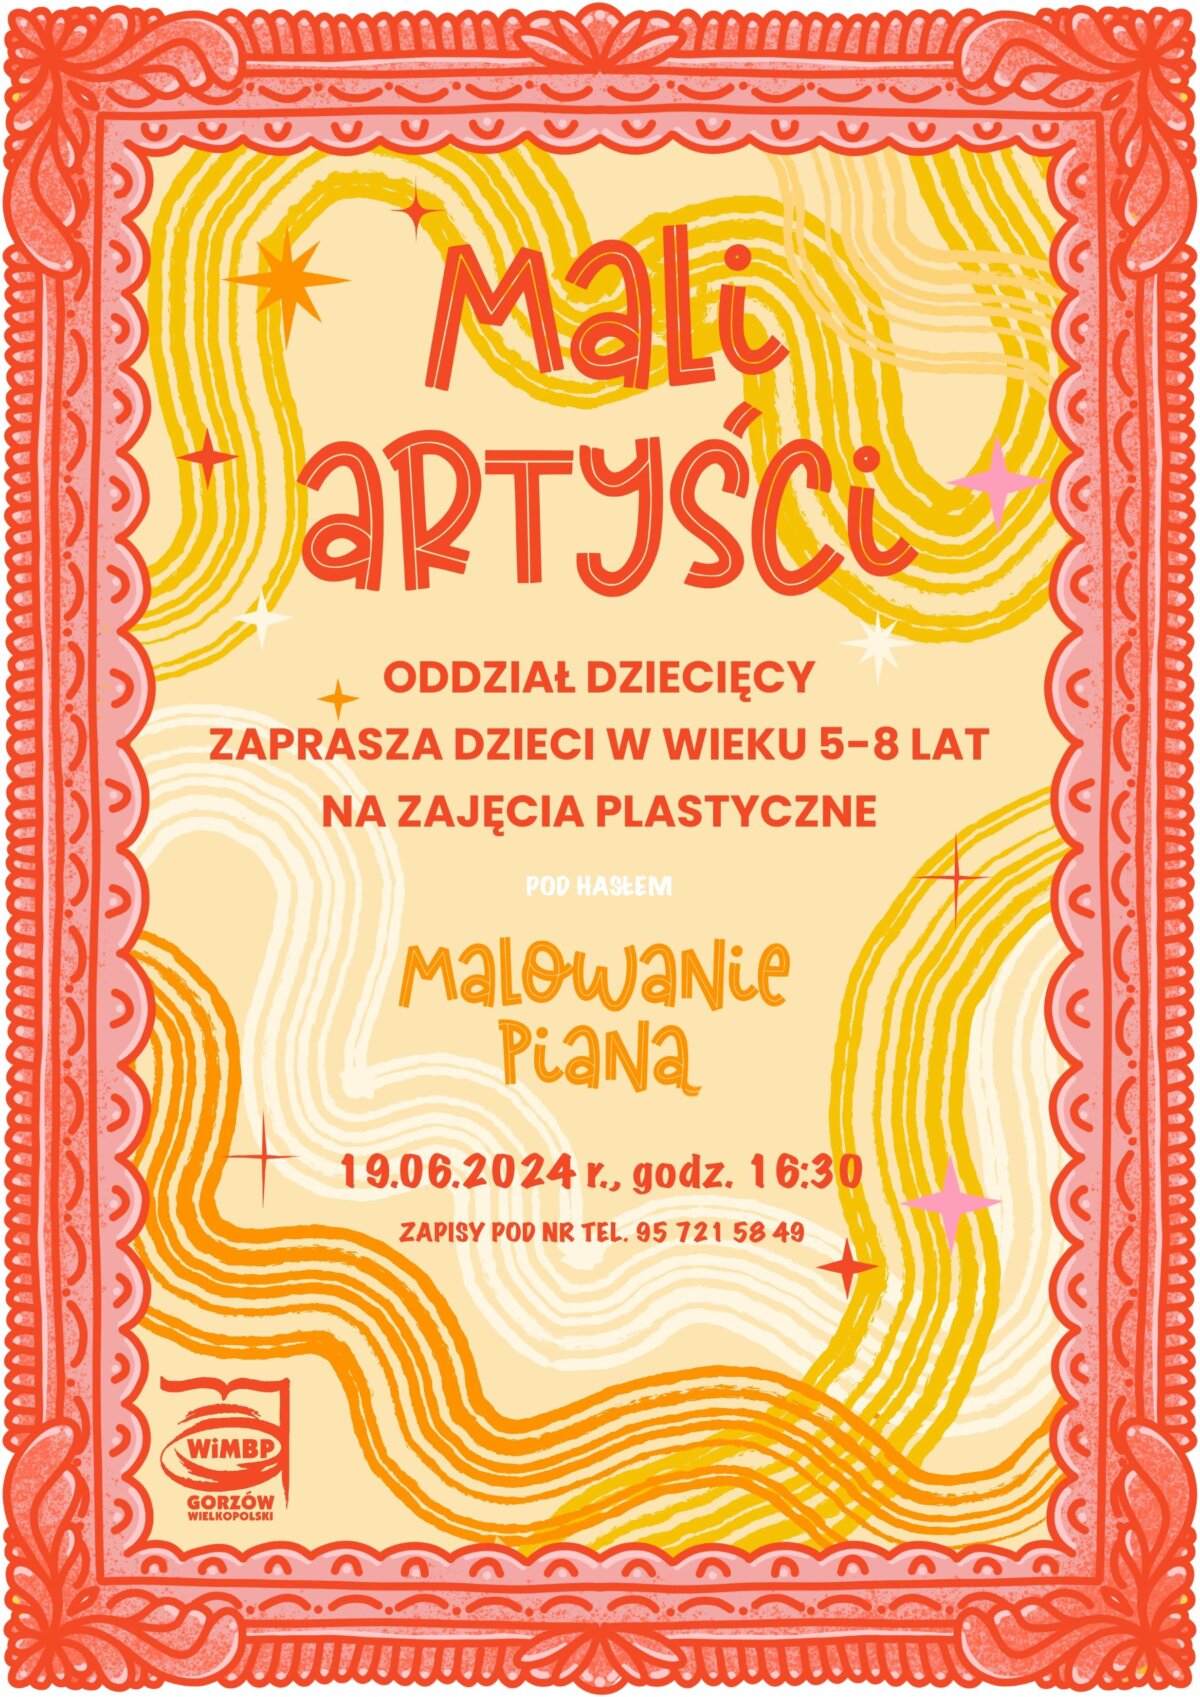 plakat promujący wydarzenie "Mali artyści".